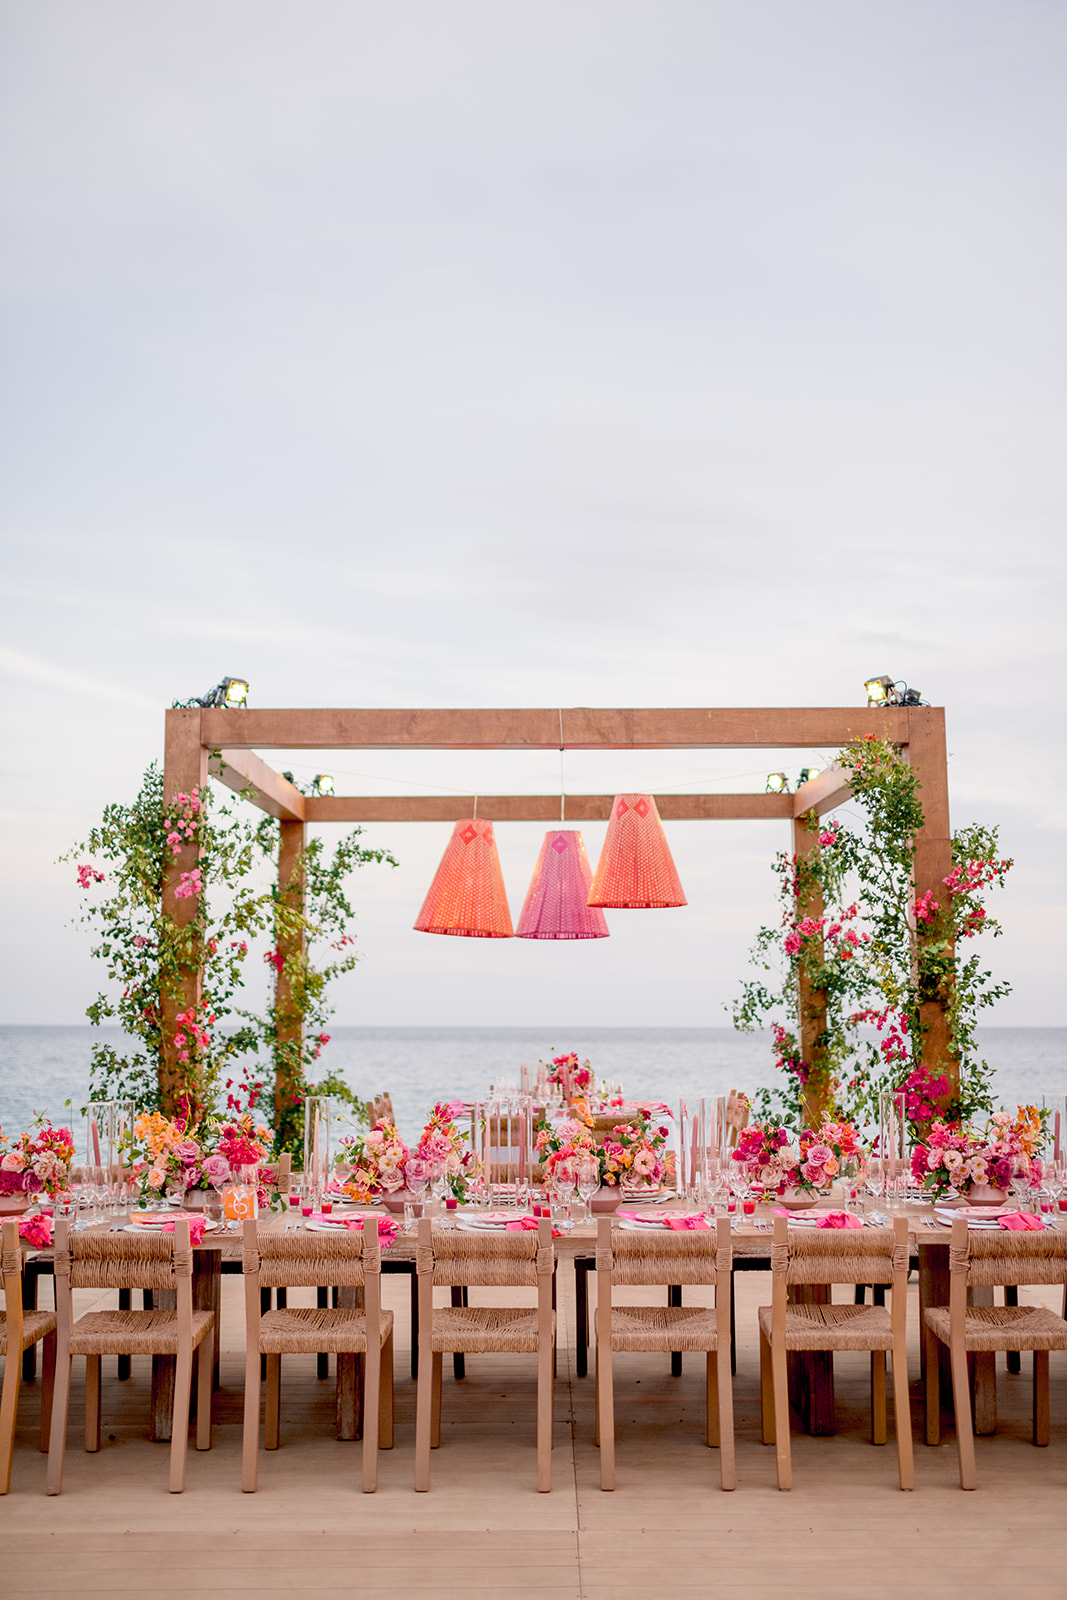 Symmetrical mod tropical wedding